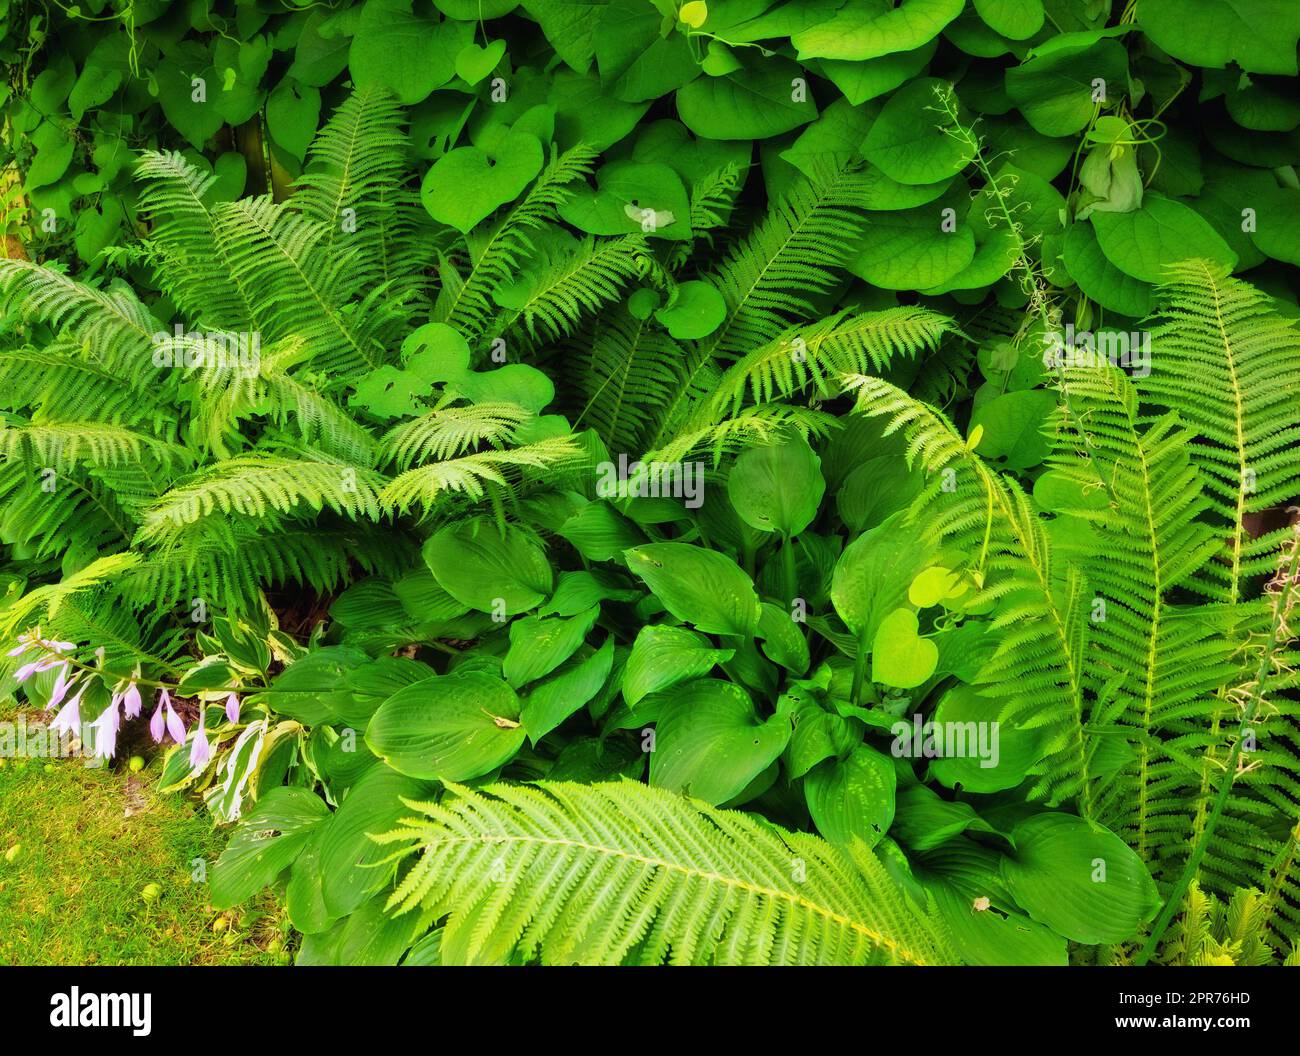 Felce e piante tropicali in giardino in una giornata di sole. Molti tipi di arbusti verdi nel cortile con fogliame verde felce floreale naturale e piante miste. Bella piccola vegetazione verdastra. Foto Stock